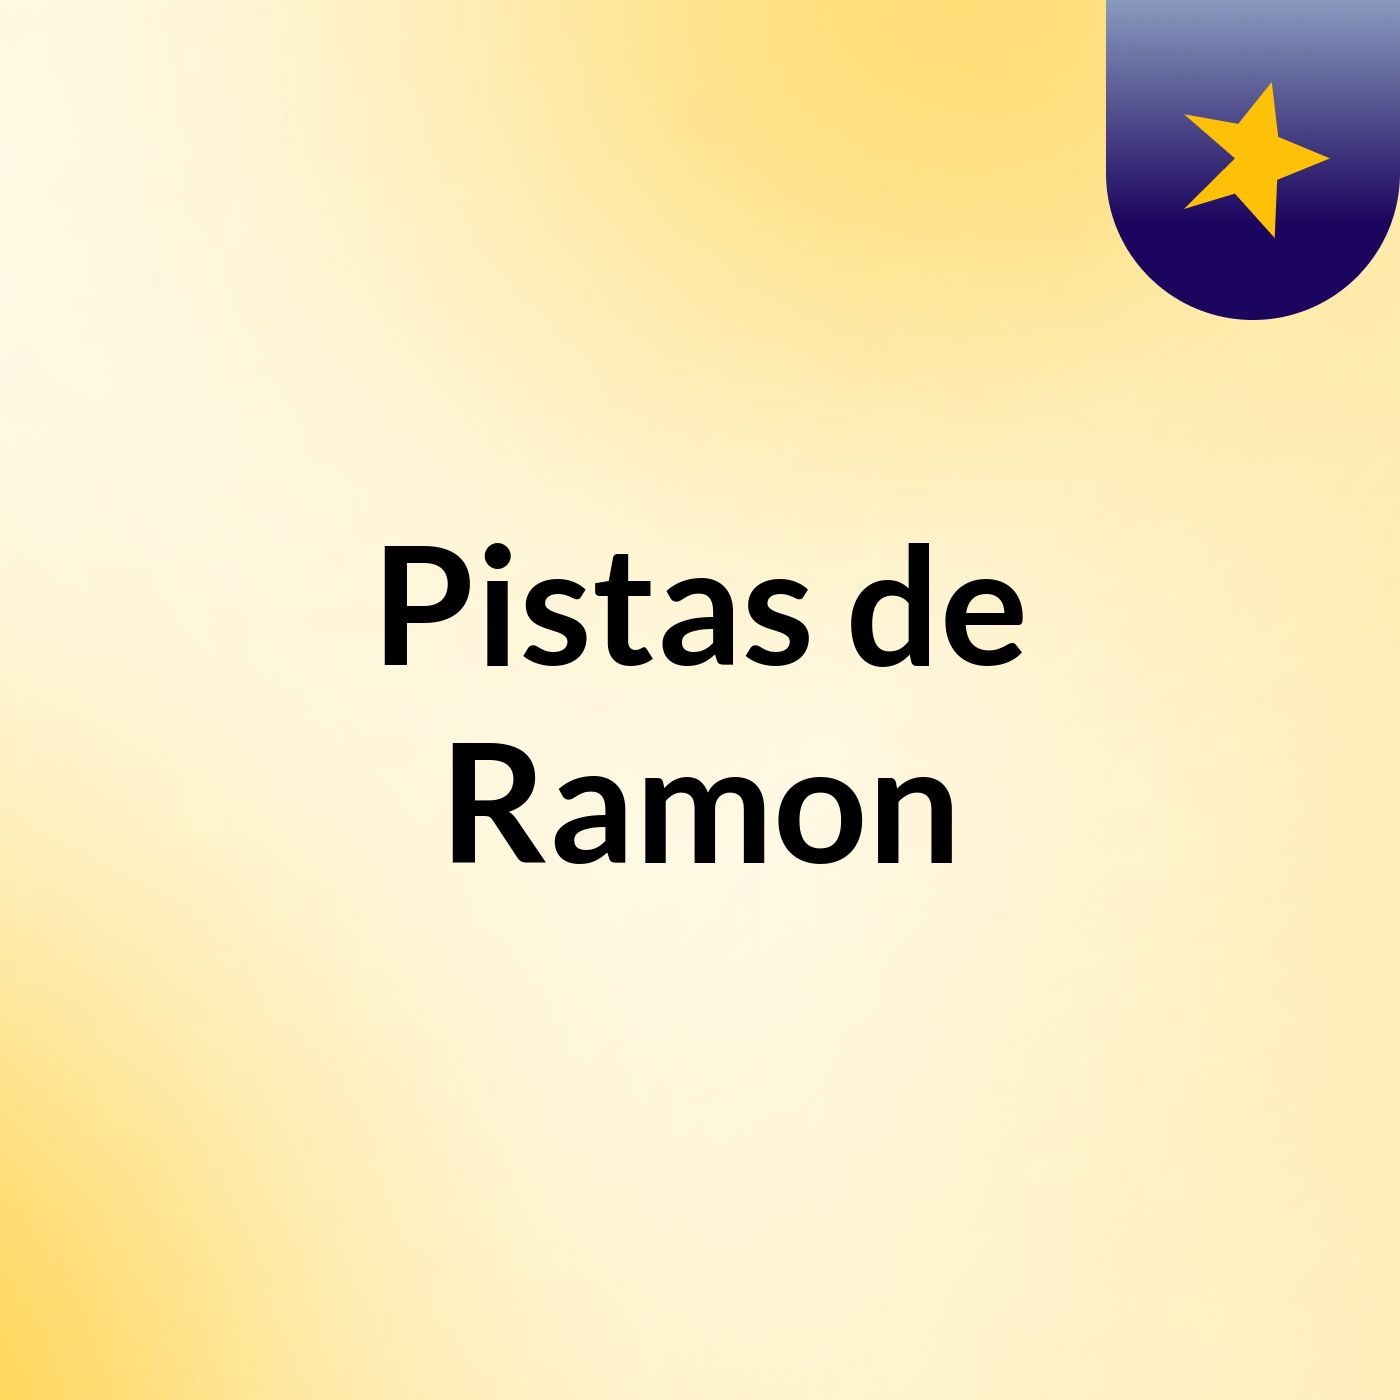 Pistas de Ramon